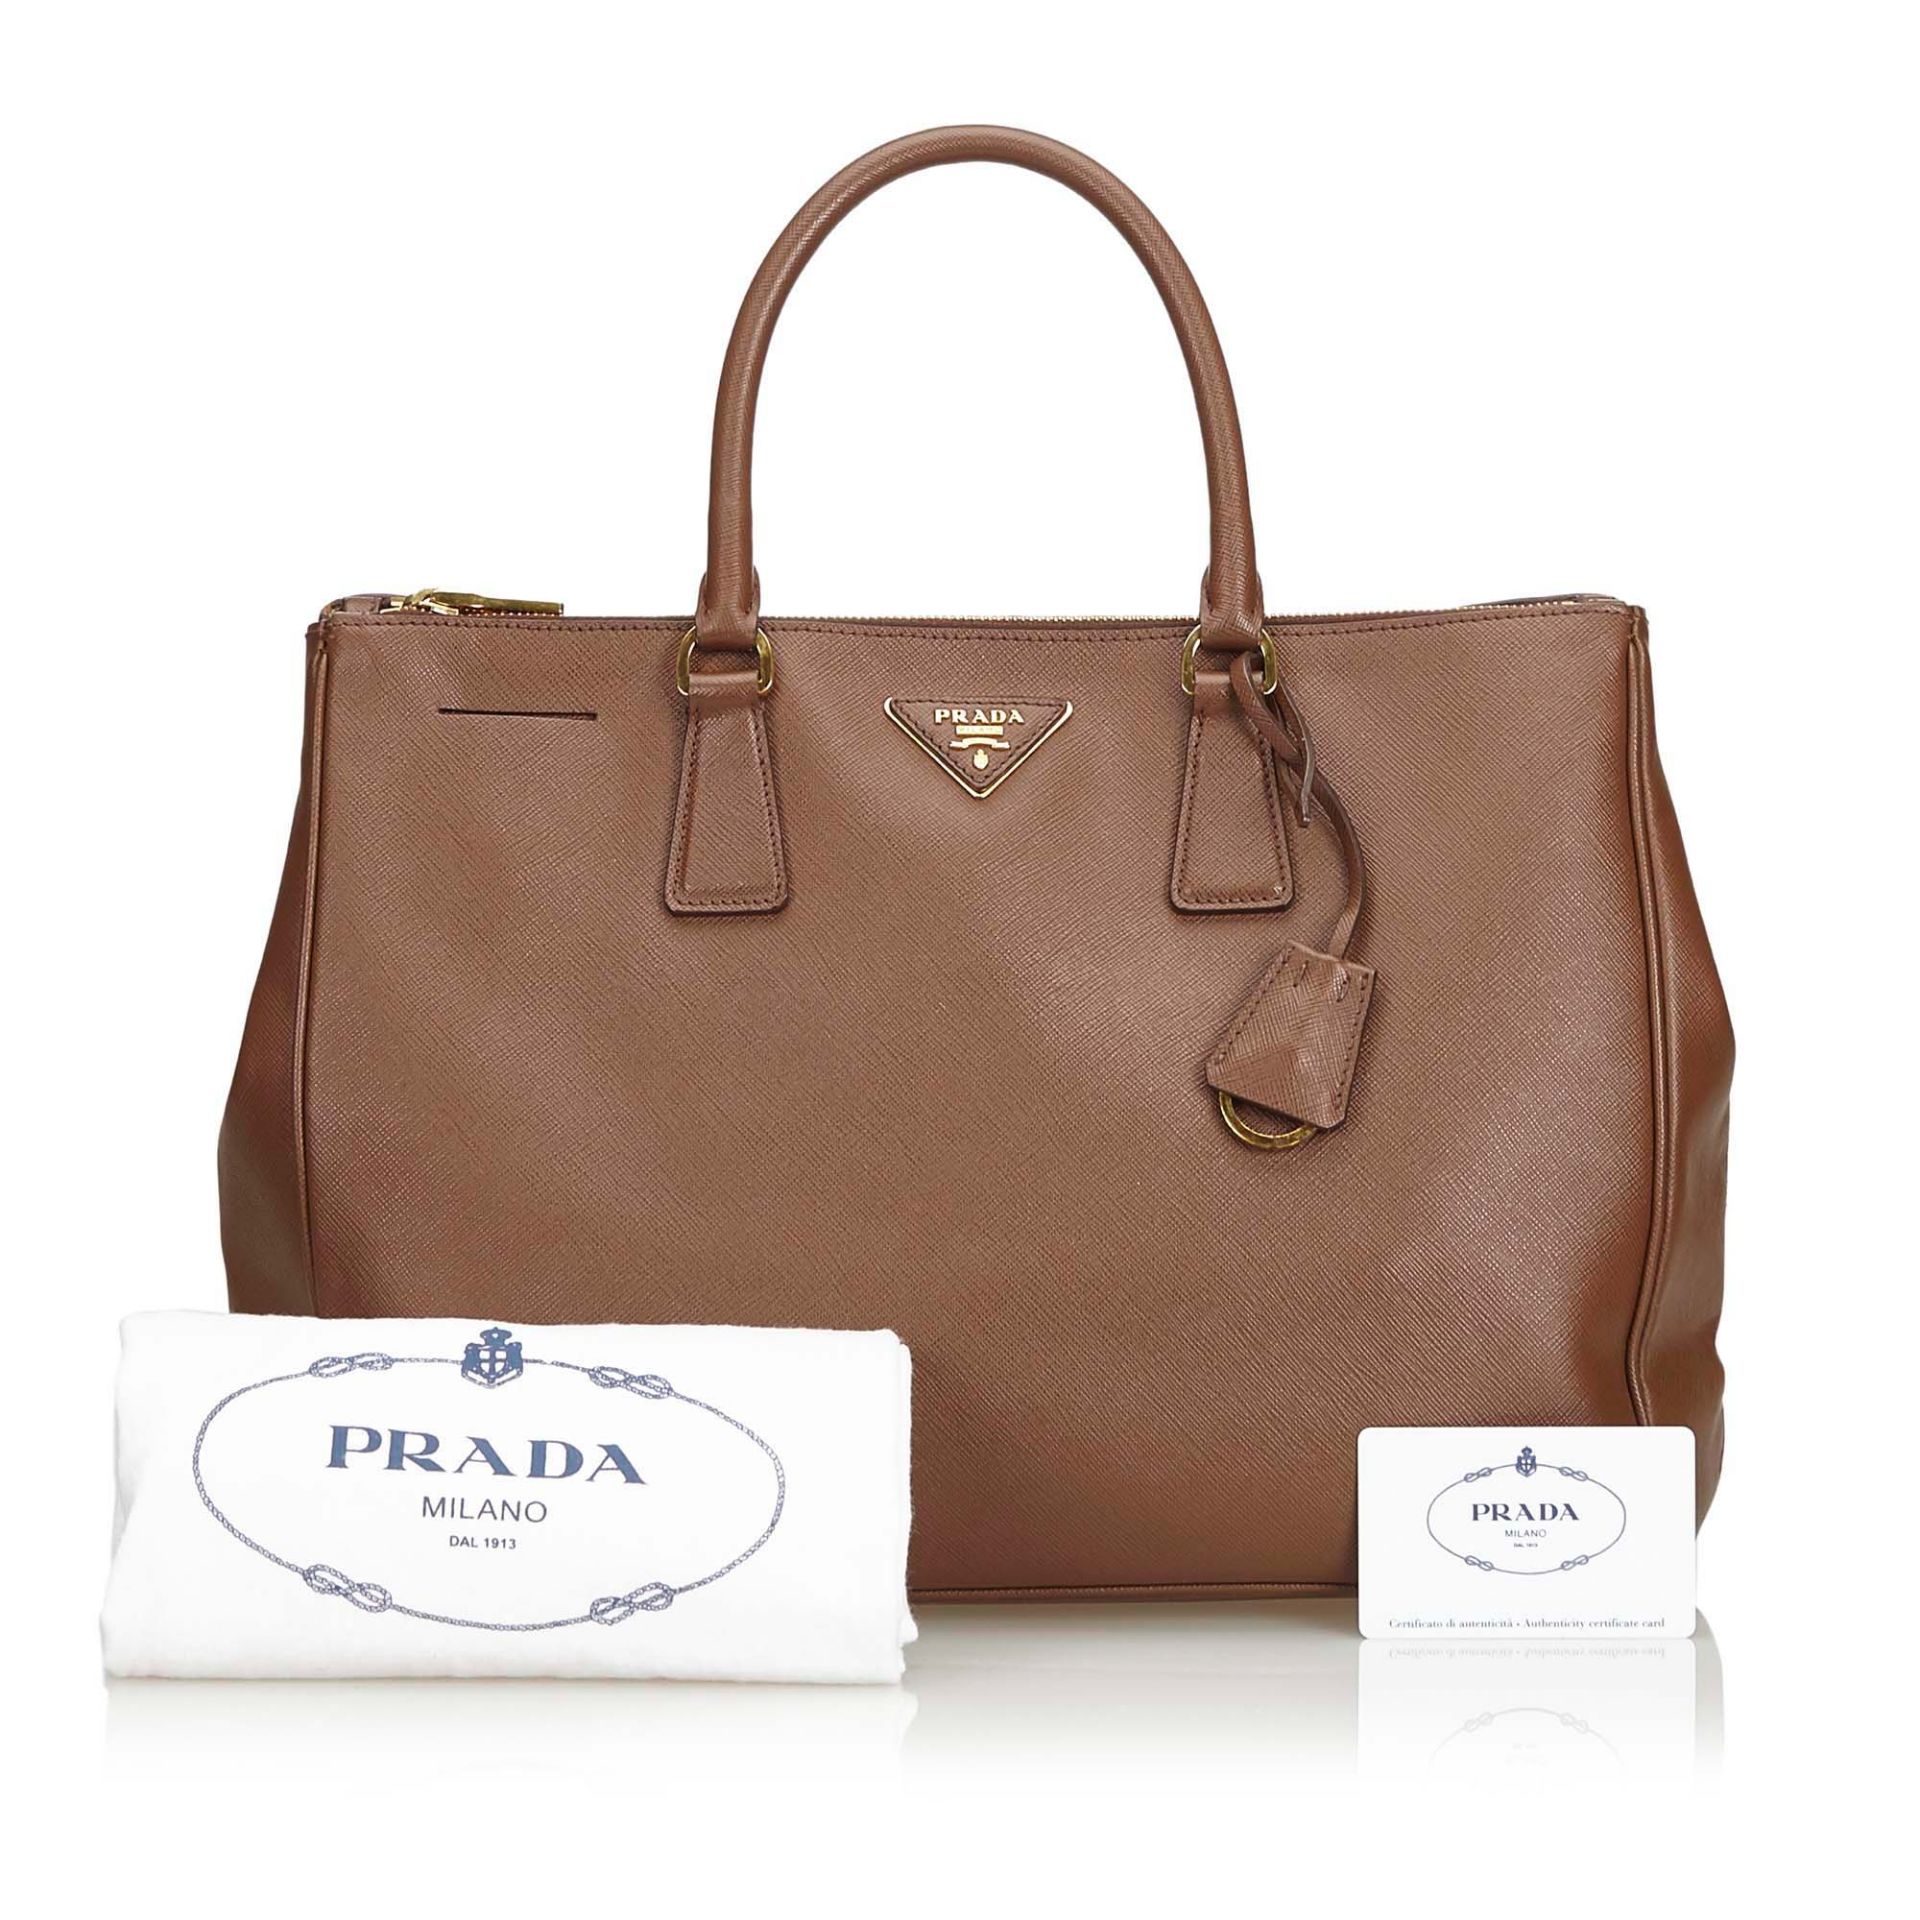 Prada Saffiano Leather Galleria Handbag - Image 6 of 10